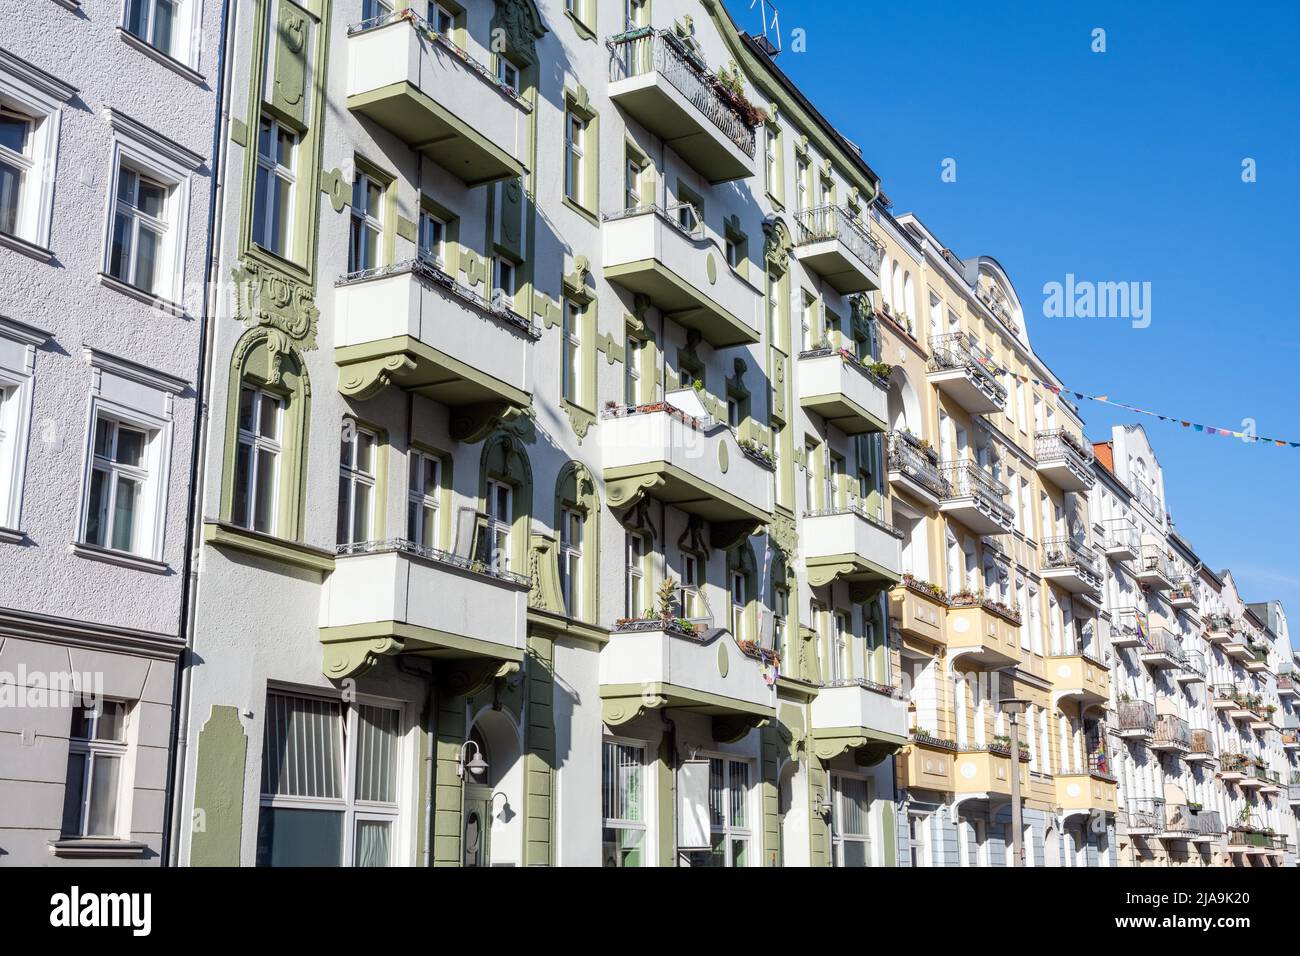 Bonitos edificios de apartamentos antiguos reformados vistos en Berlín, Alemania Foto de stock